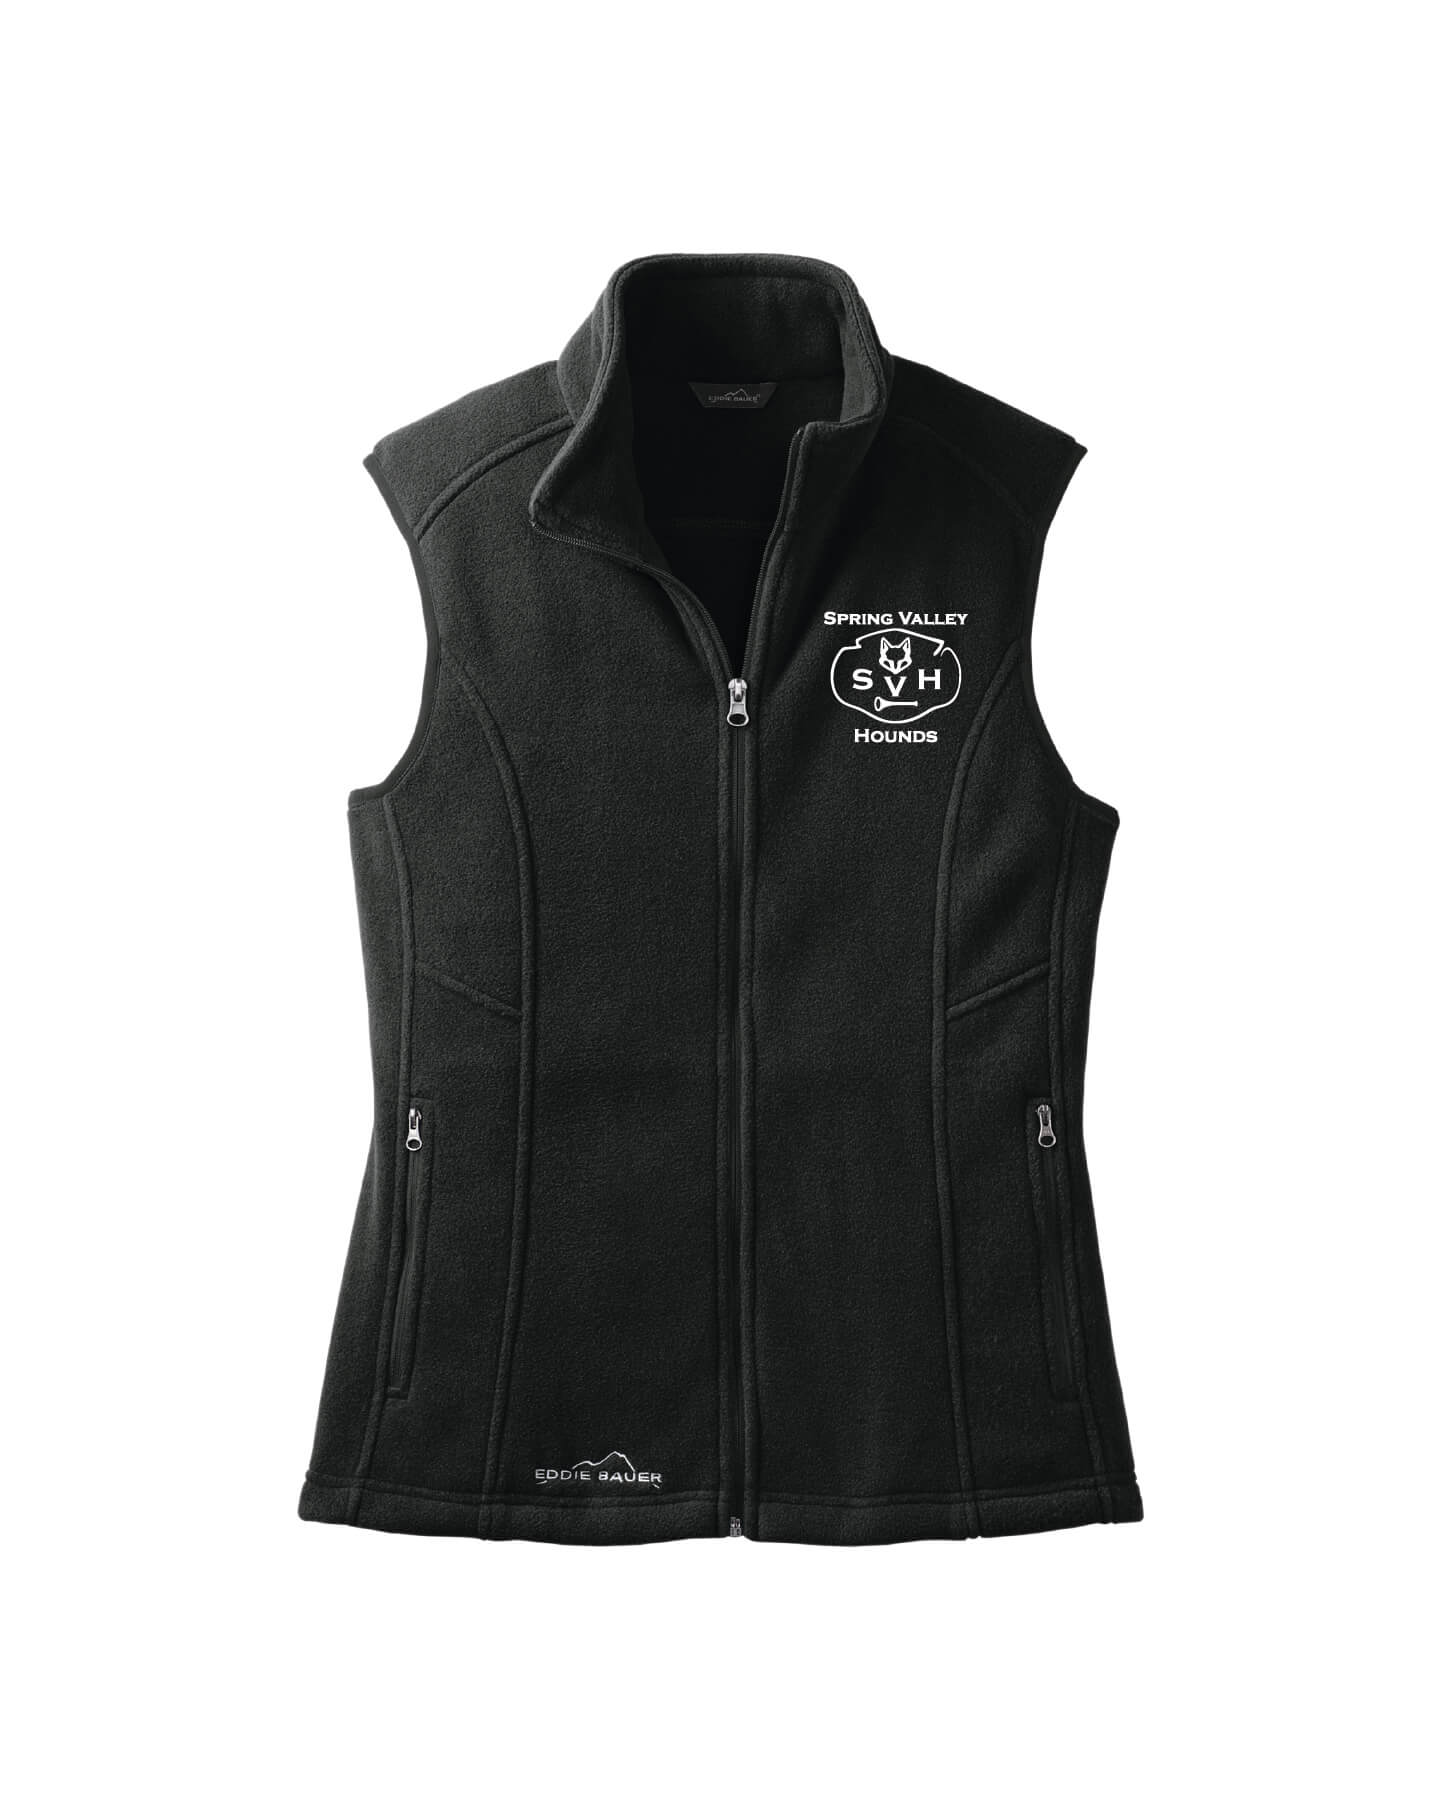 Fleece Vest (Ladies) Hounds black